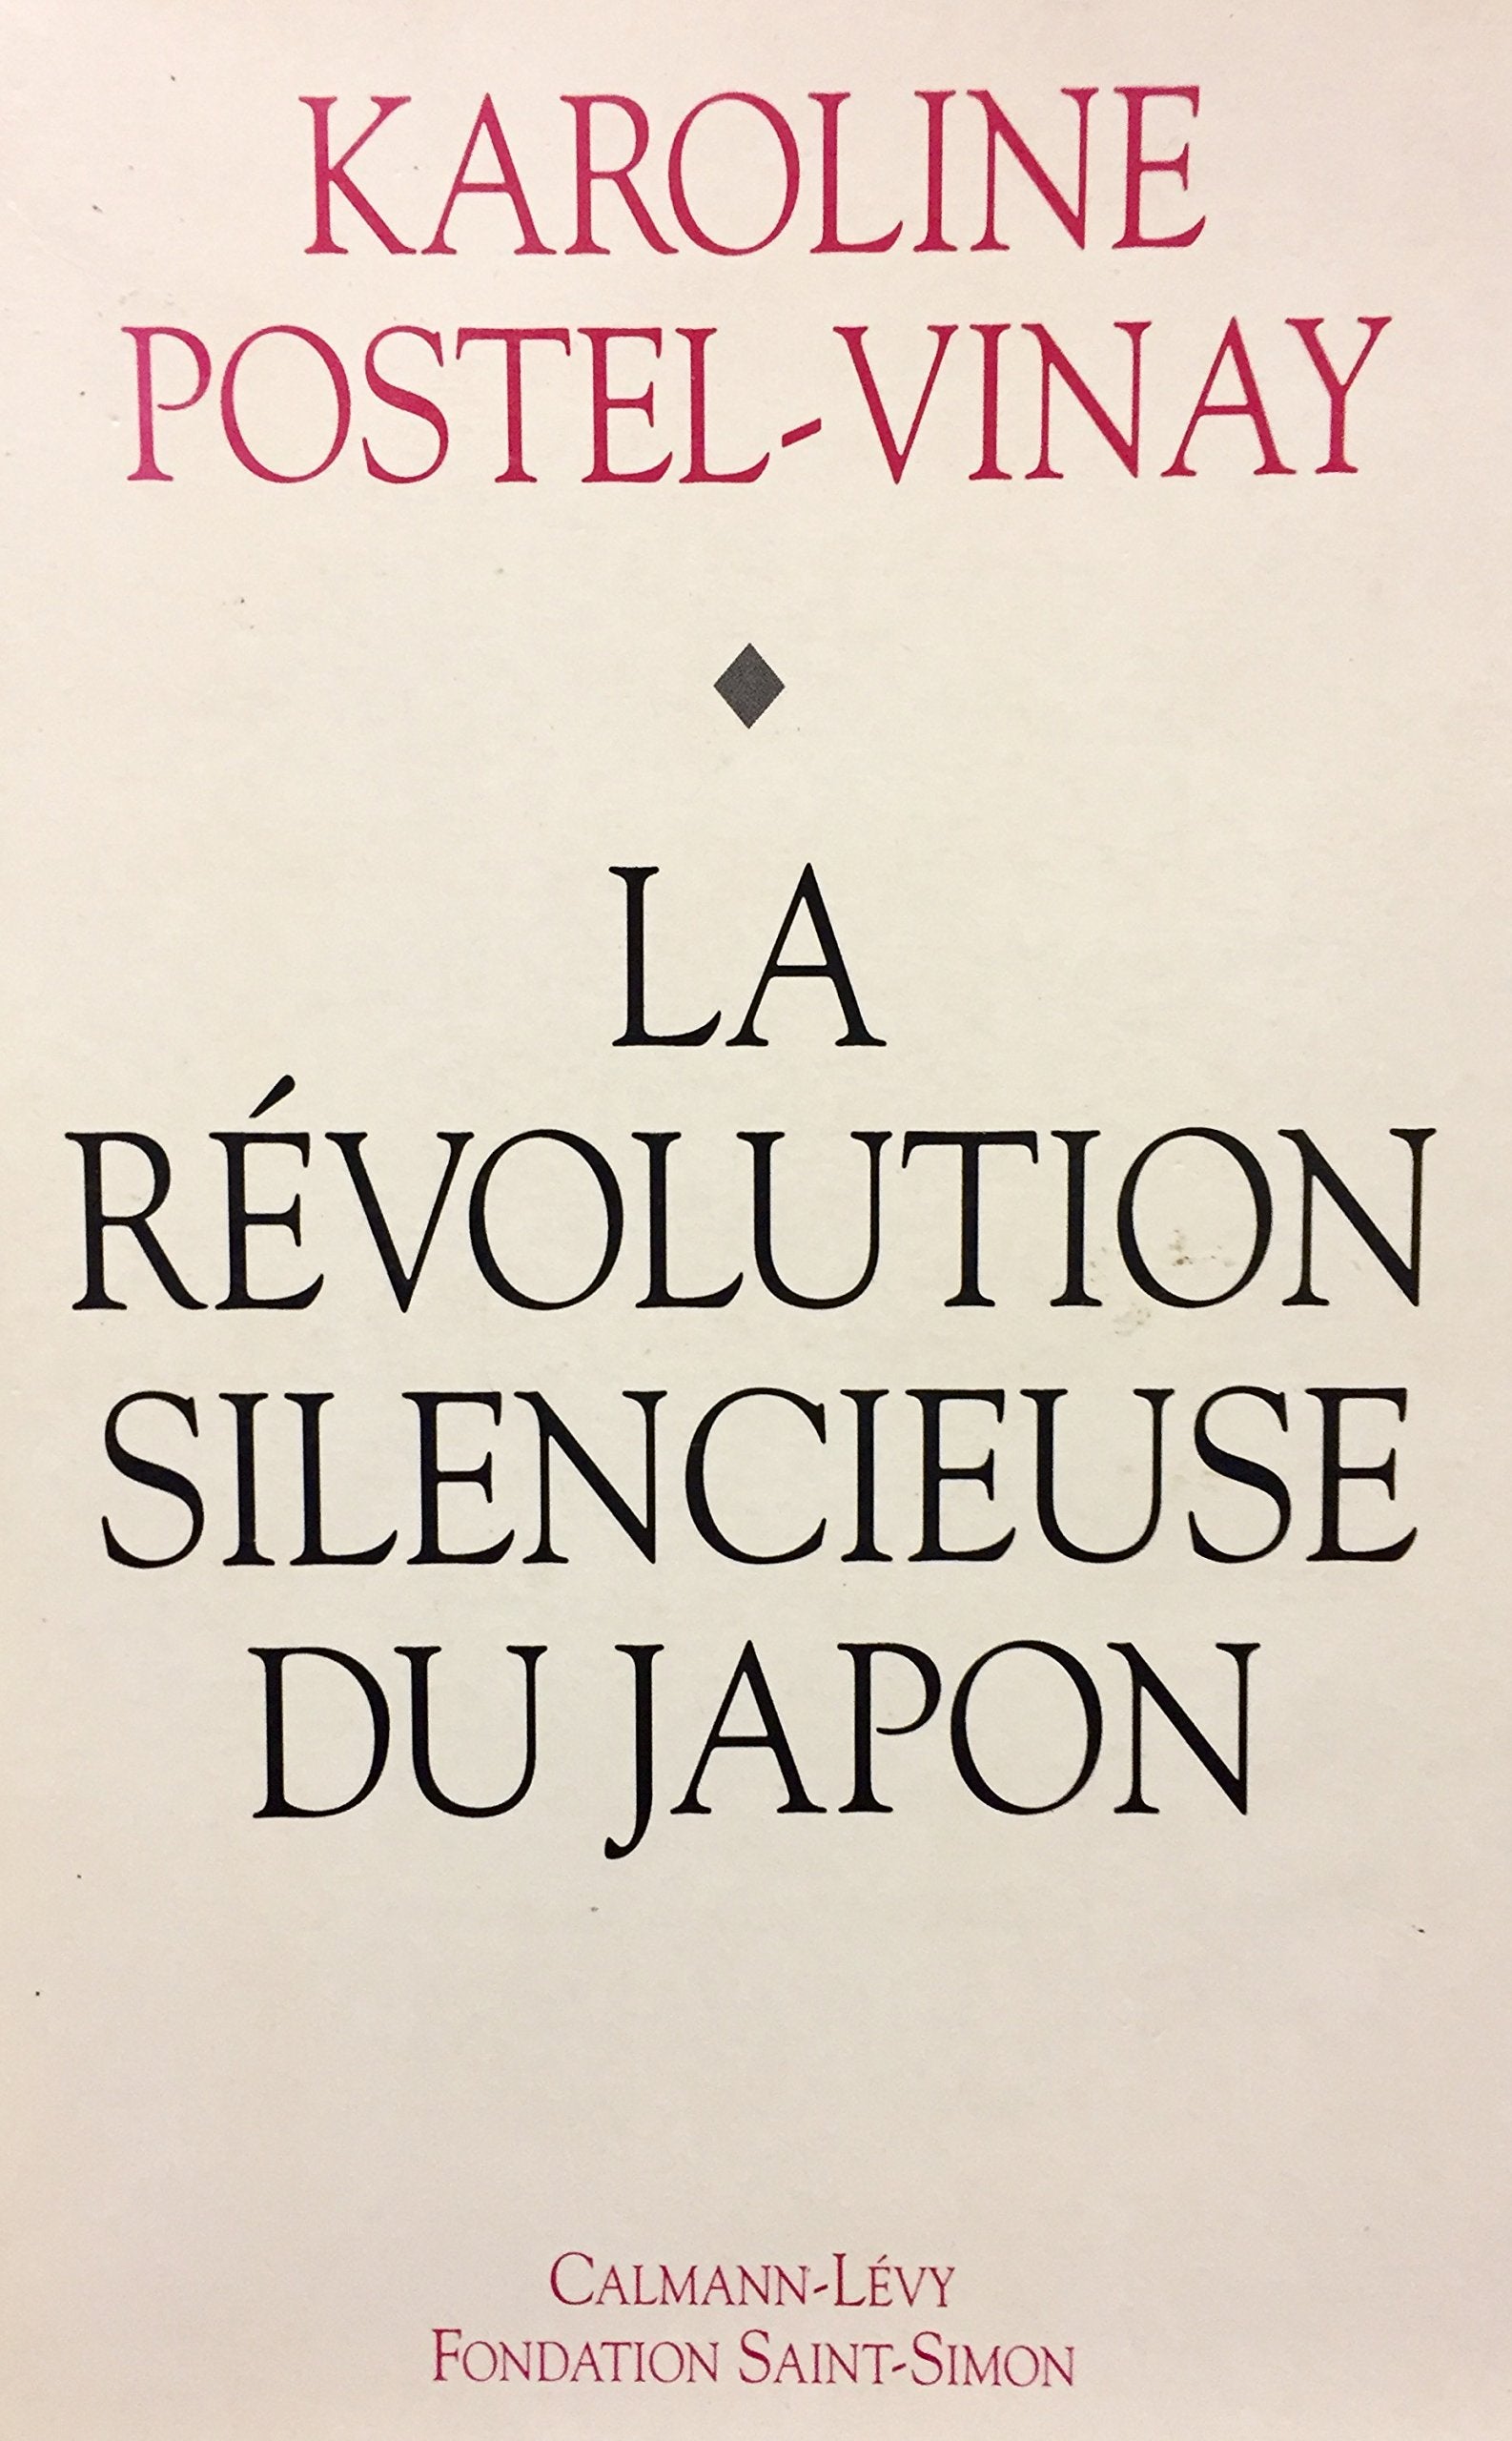 Livre ISBN 2702122949 La révolution silencieuse du Japon (Vinay Postel)